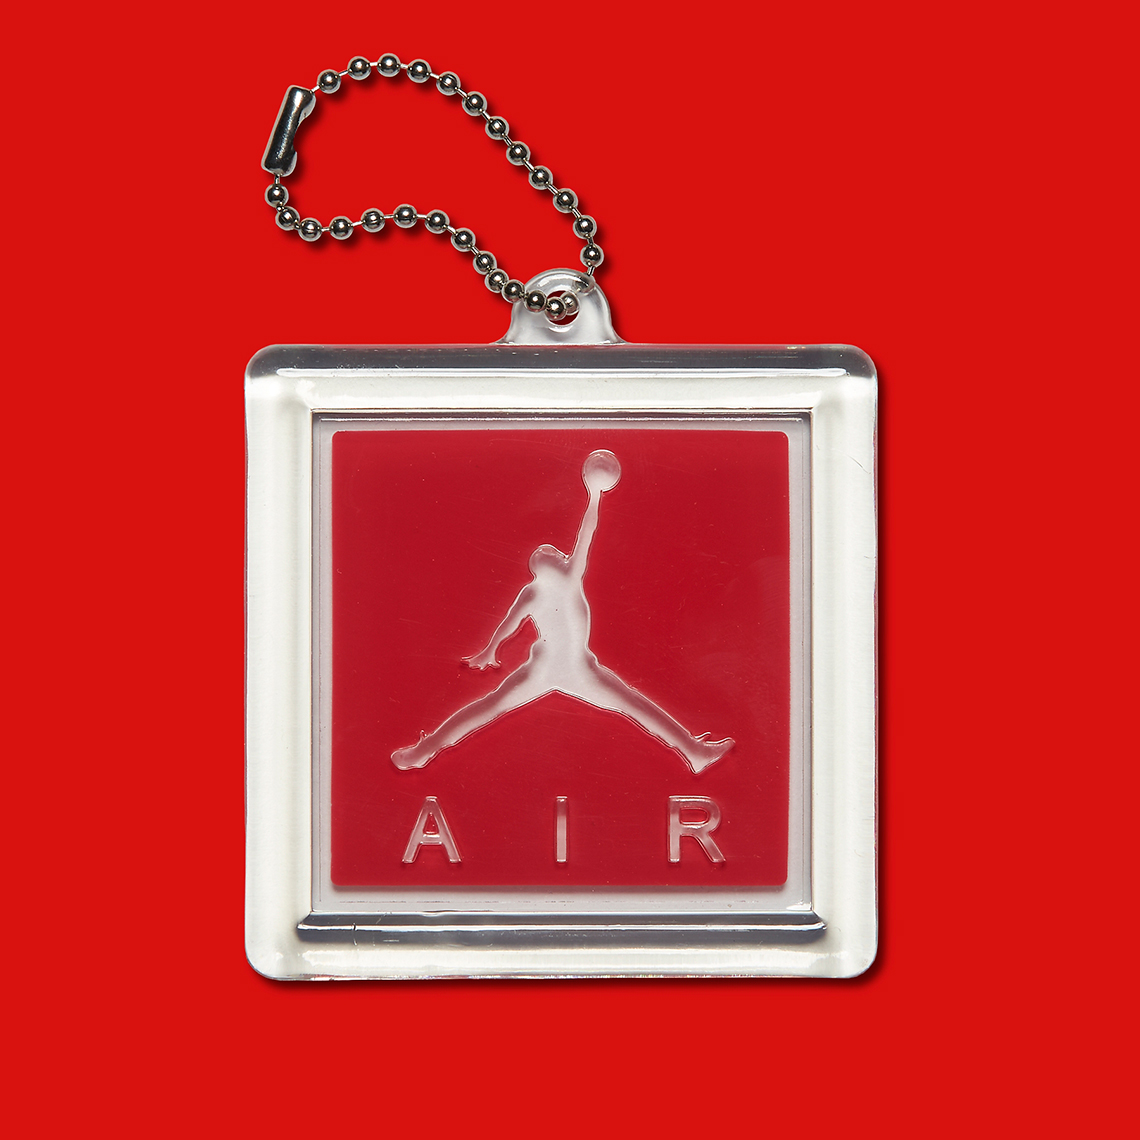 Air Jordan 3 Katrina Official Images 136064 116 4